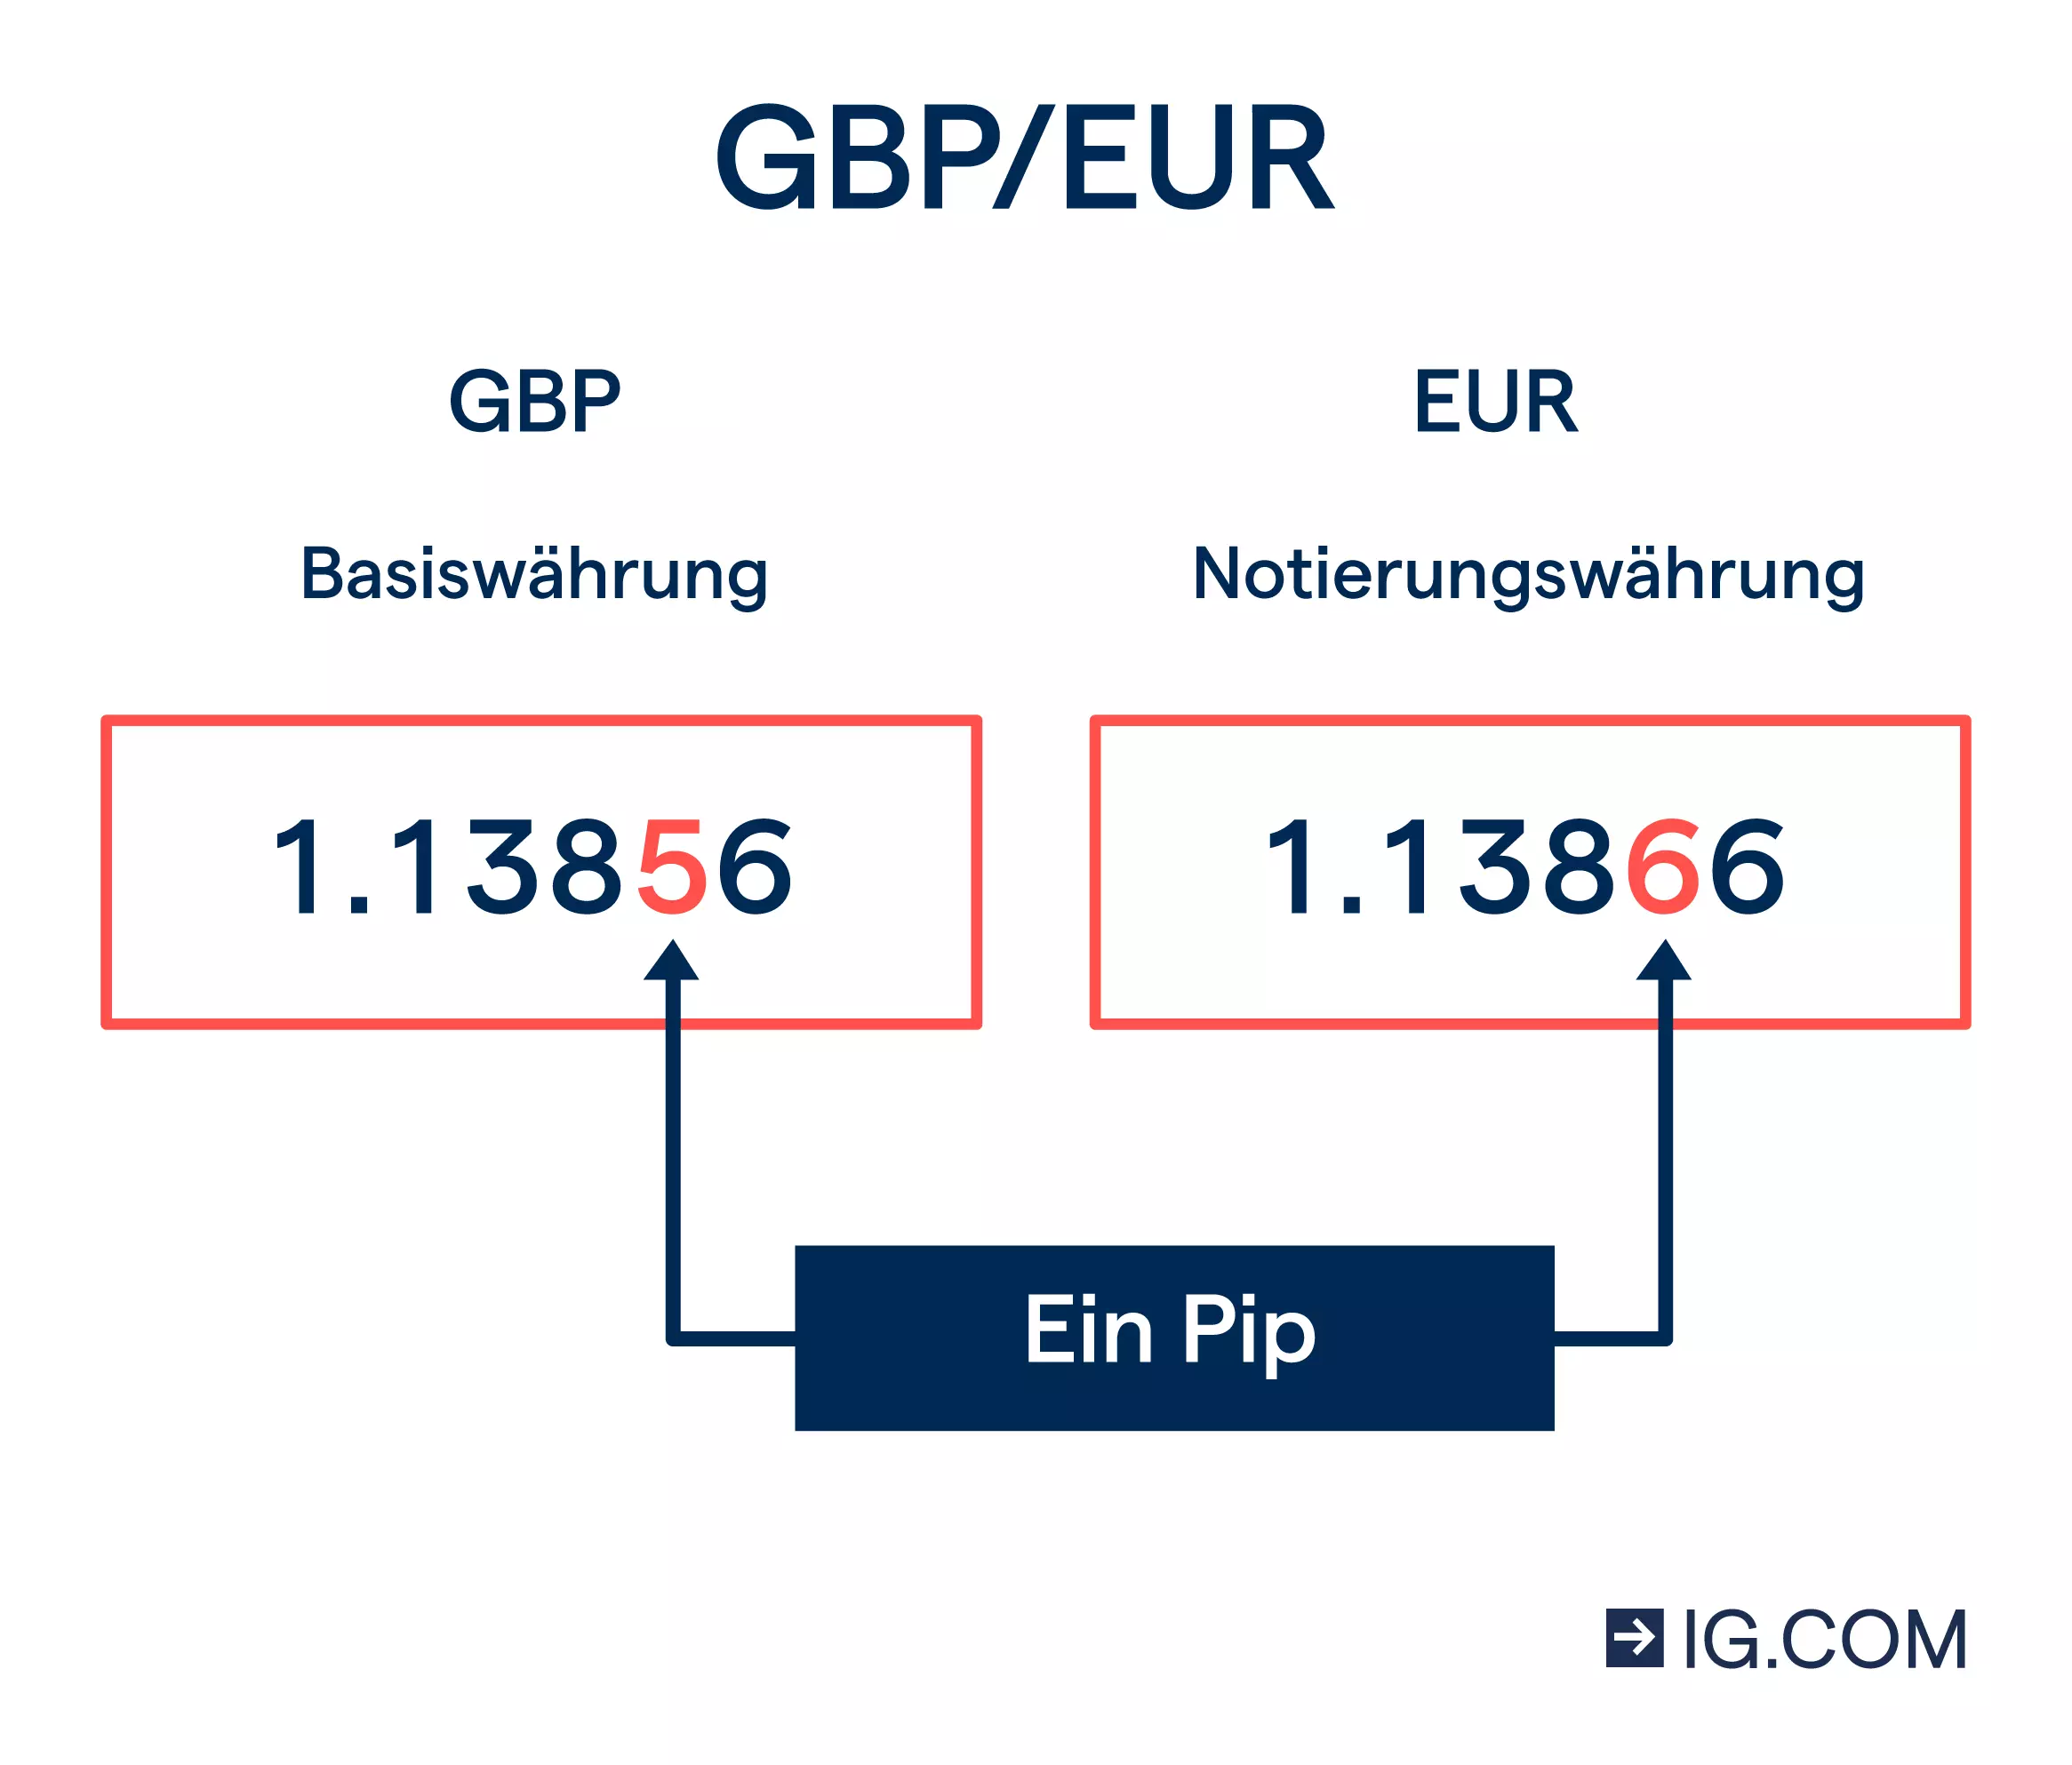 Bild des Währungspaars GBP/EUR mit Wertangabe. Die vierte Dezimalstelle ist bei den Werten hervorgehoben und als „Ein Pip“ markiert.